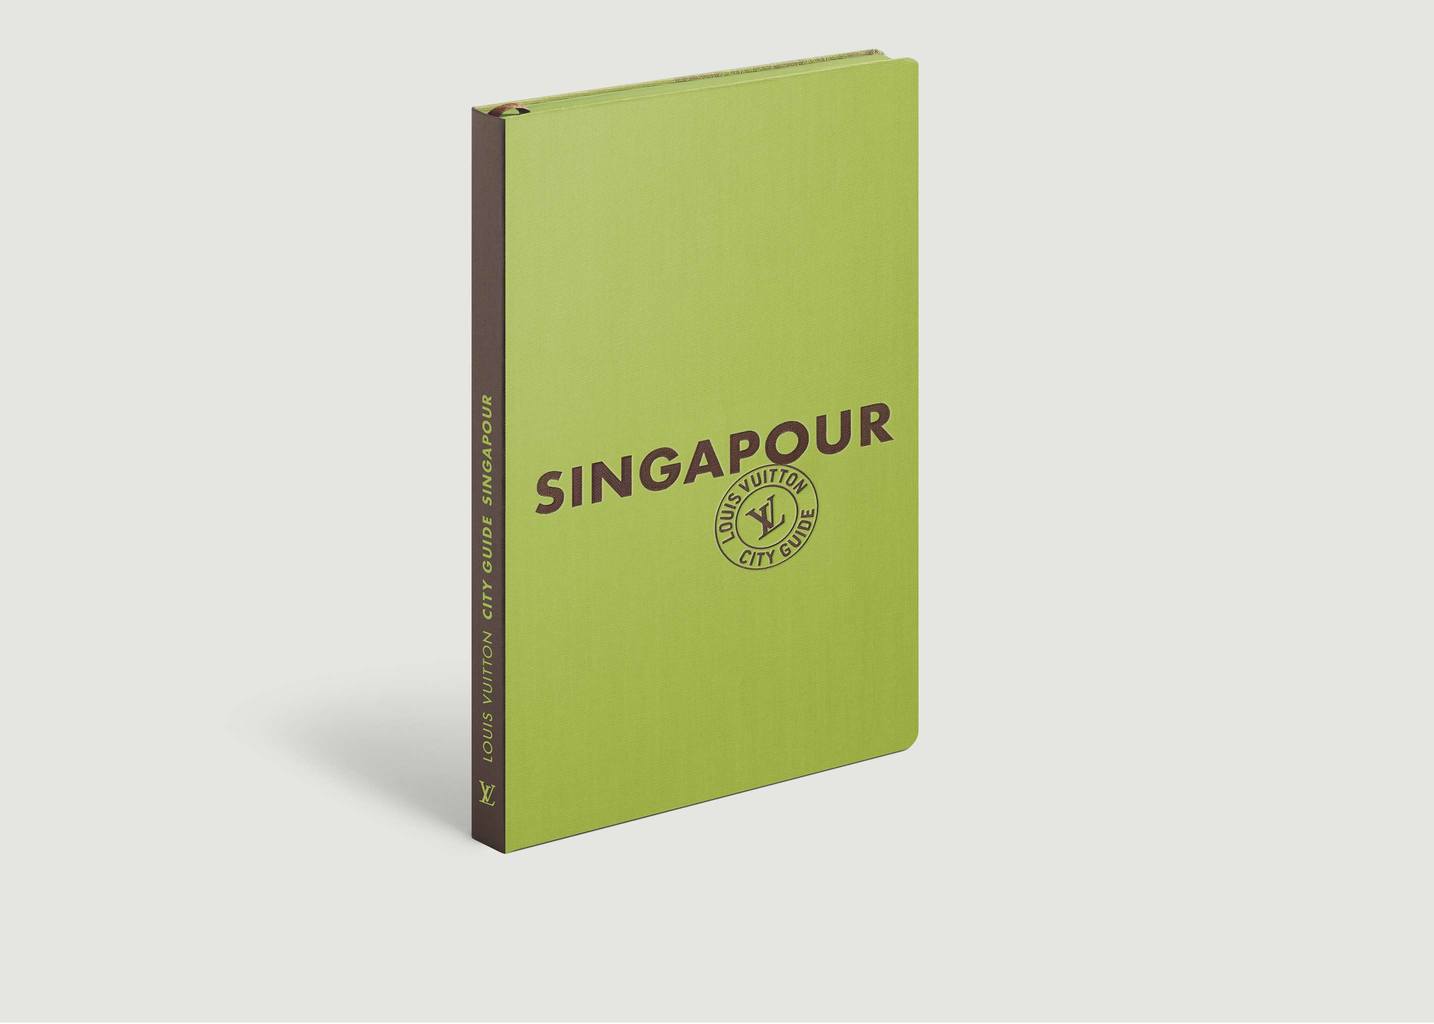 City Guide Singapour 2020 - Louis Vuitton Travel Book